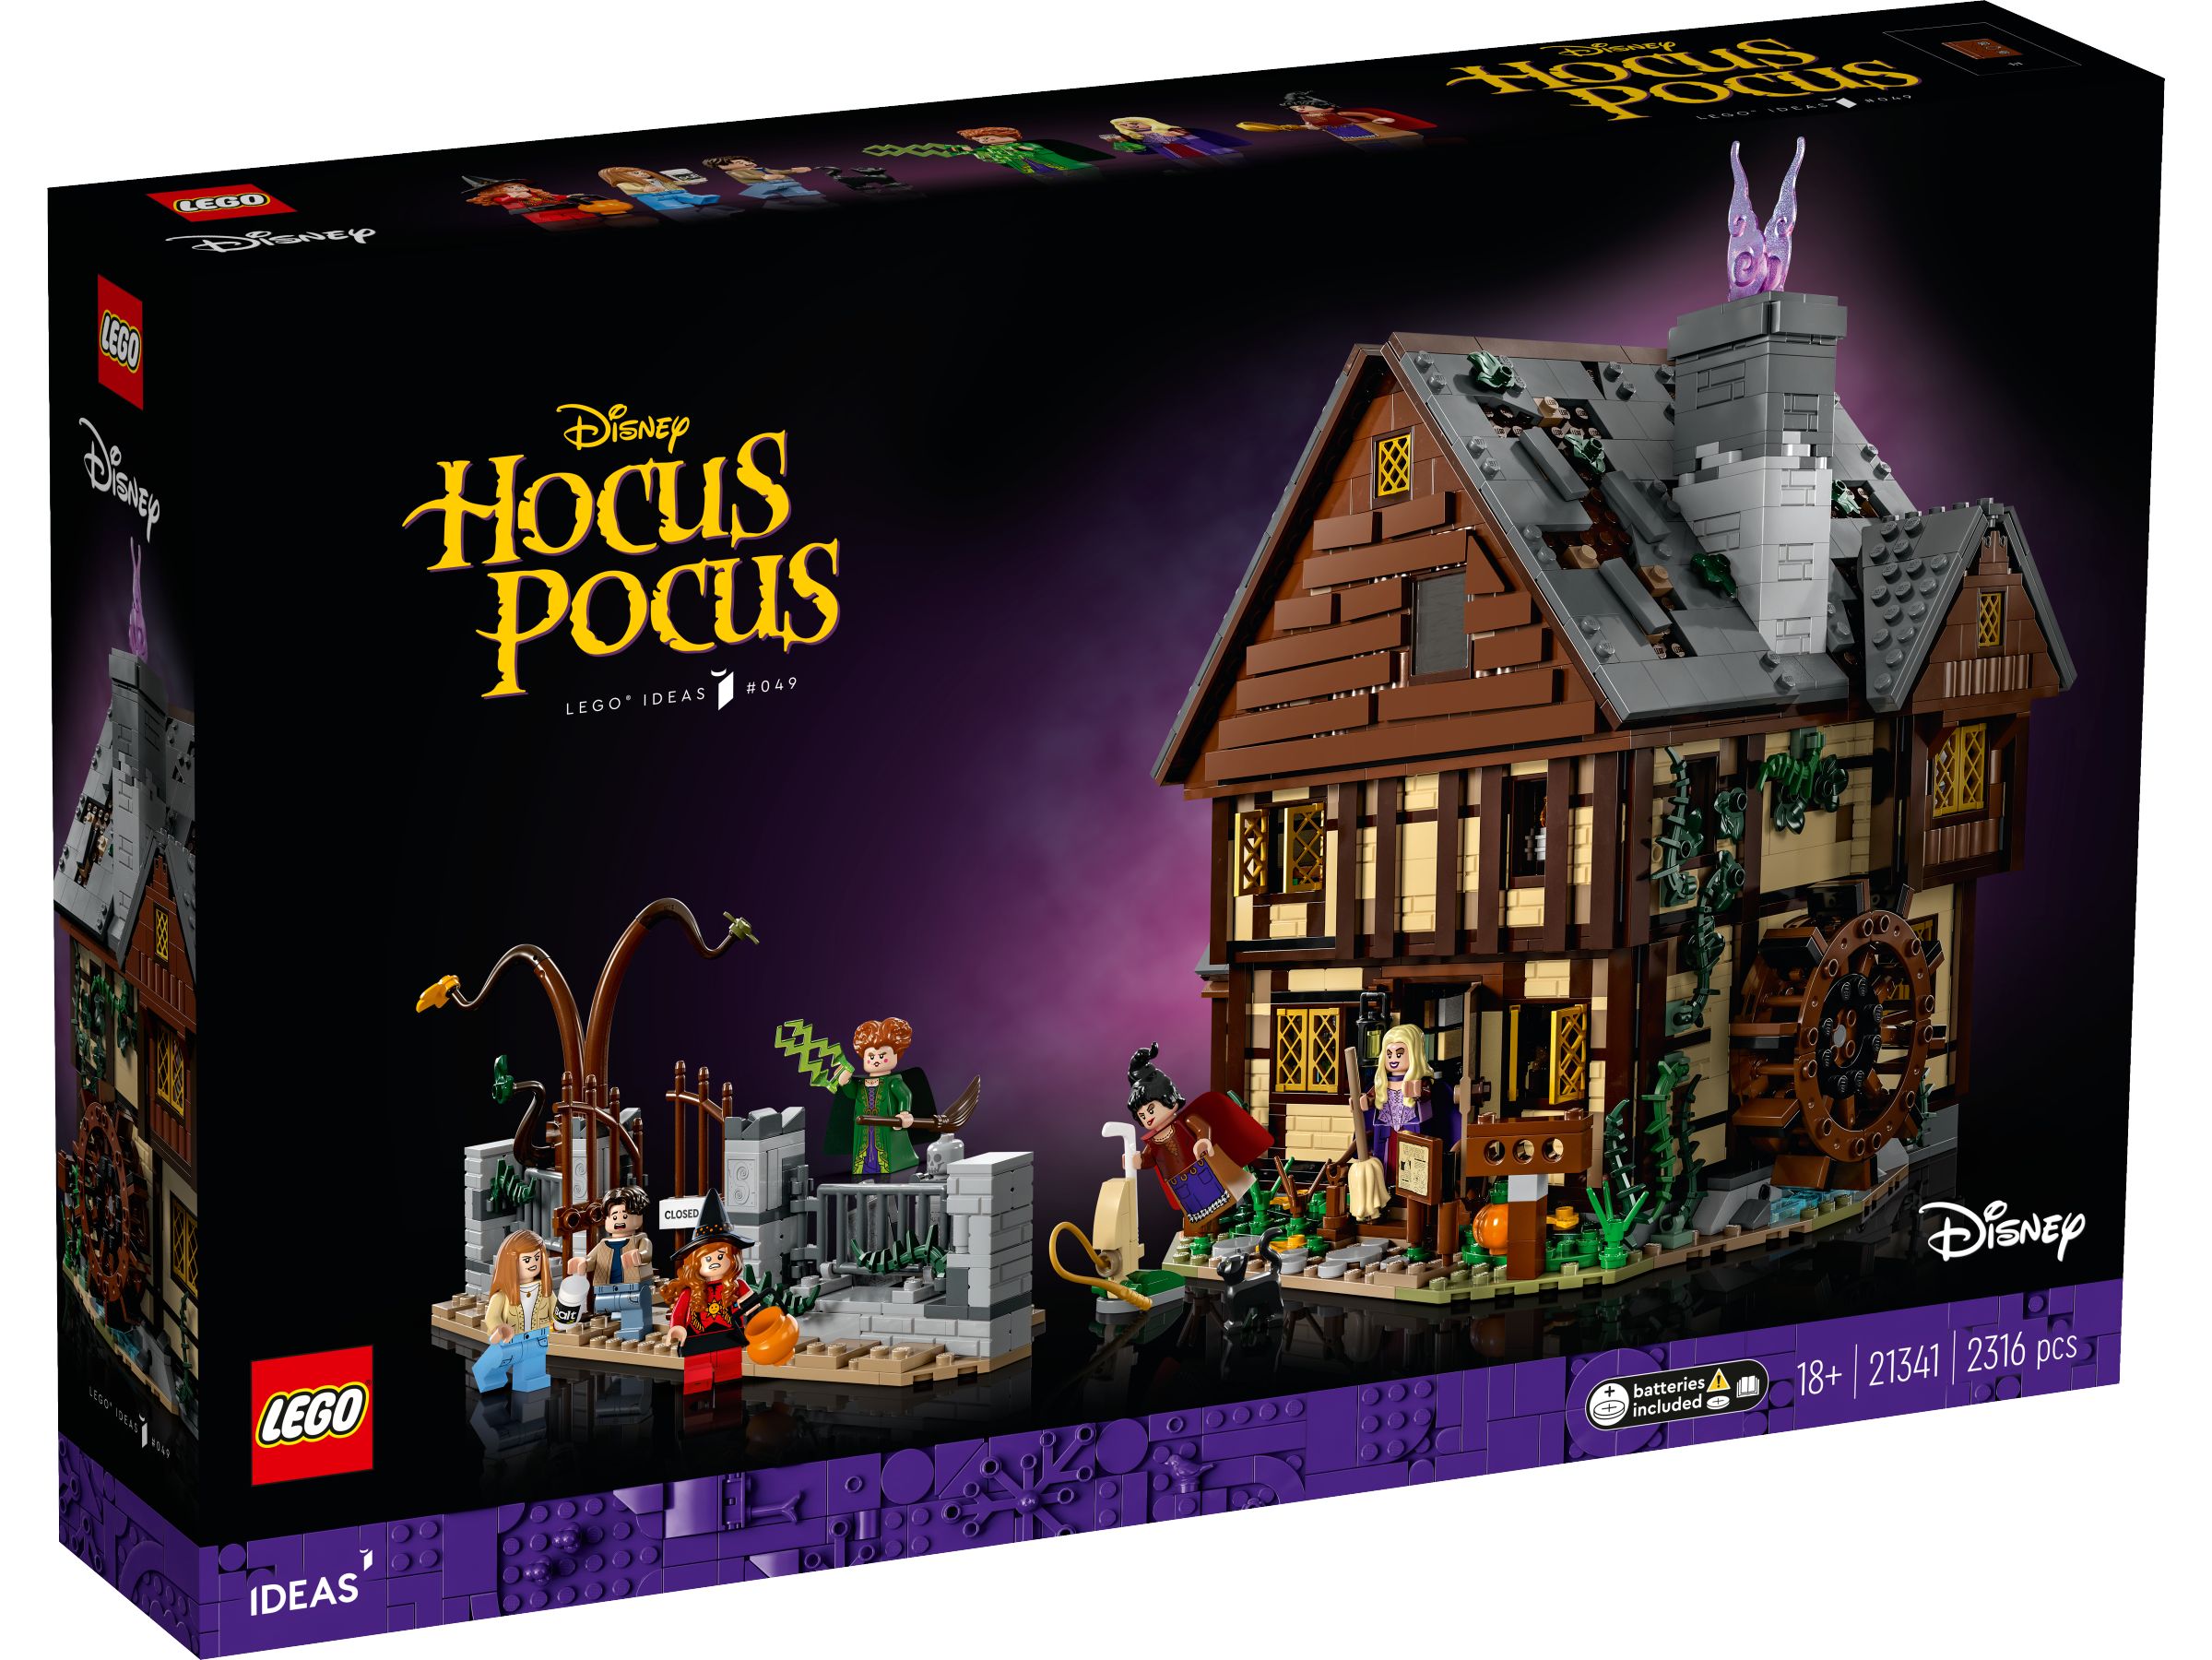 LEGO Ideas 21341 Disney Hocus Pocus: Das Hexenhaus der Sanderson-Schwestern LEGO_21341_Box1_v29.jpg